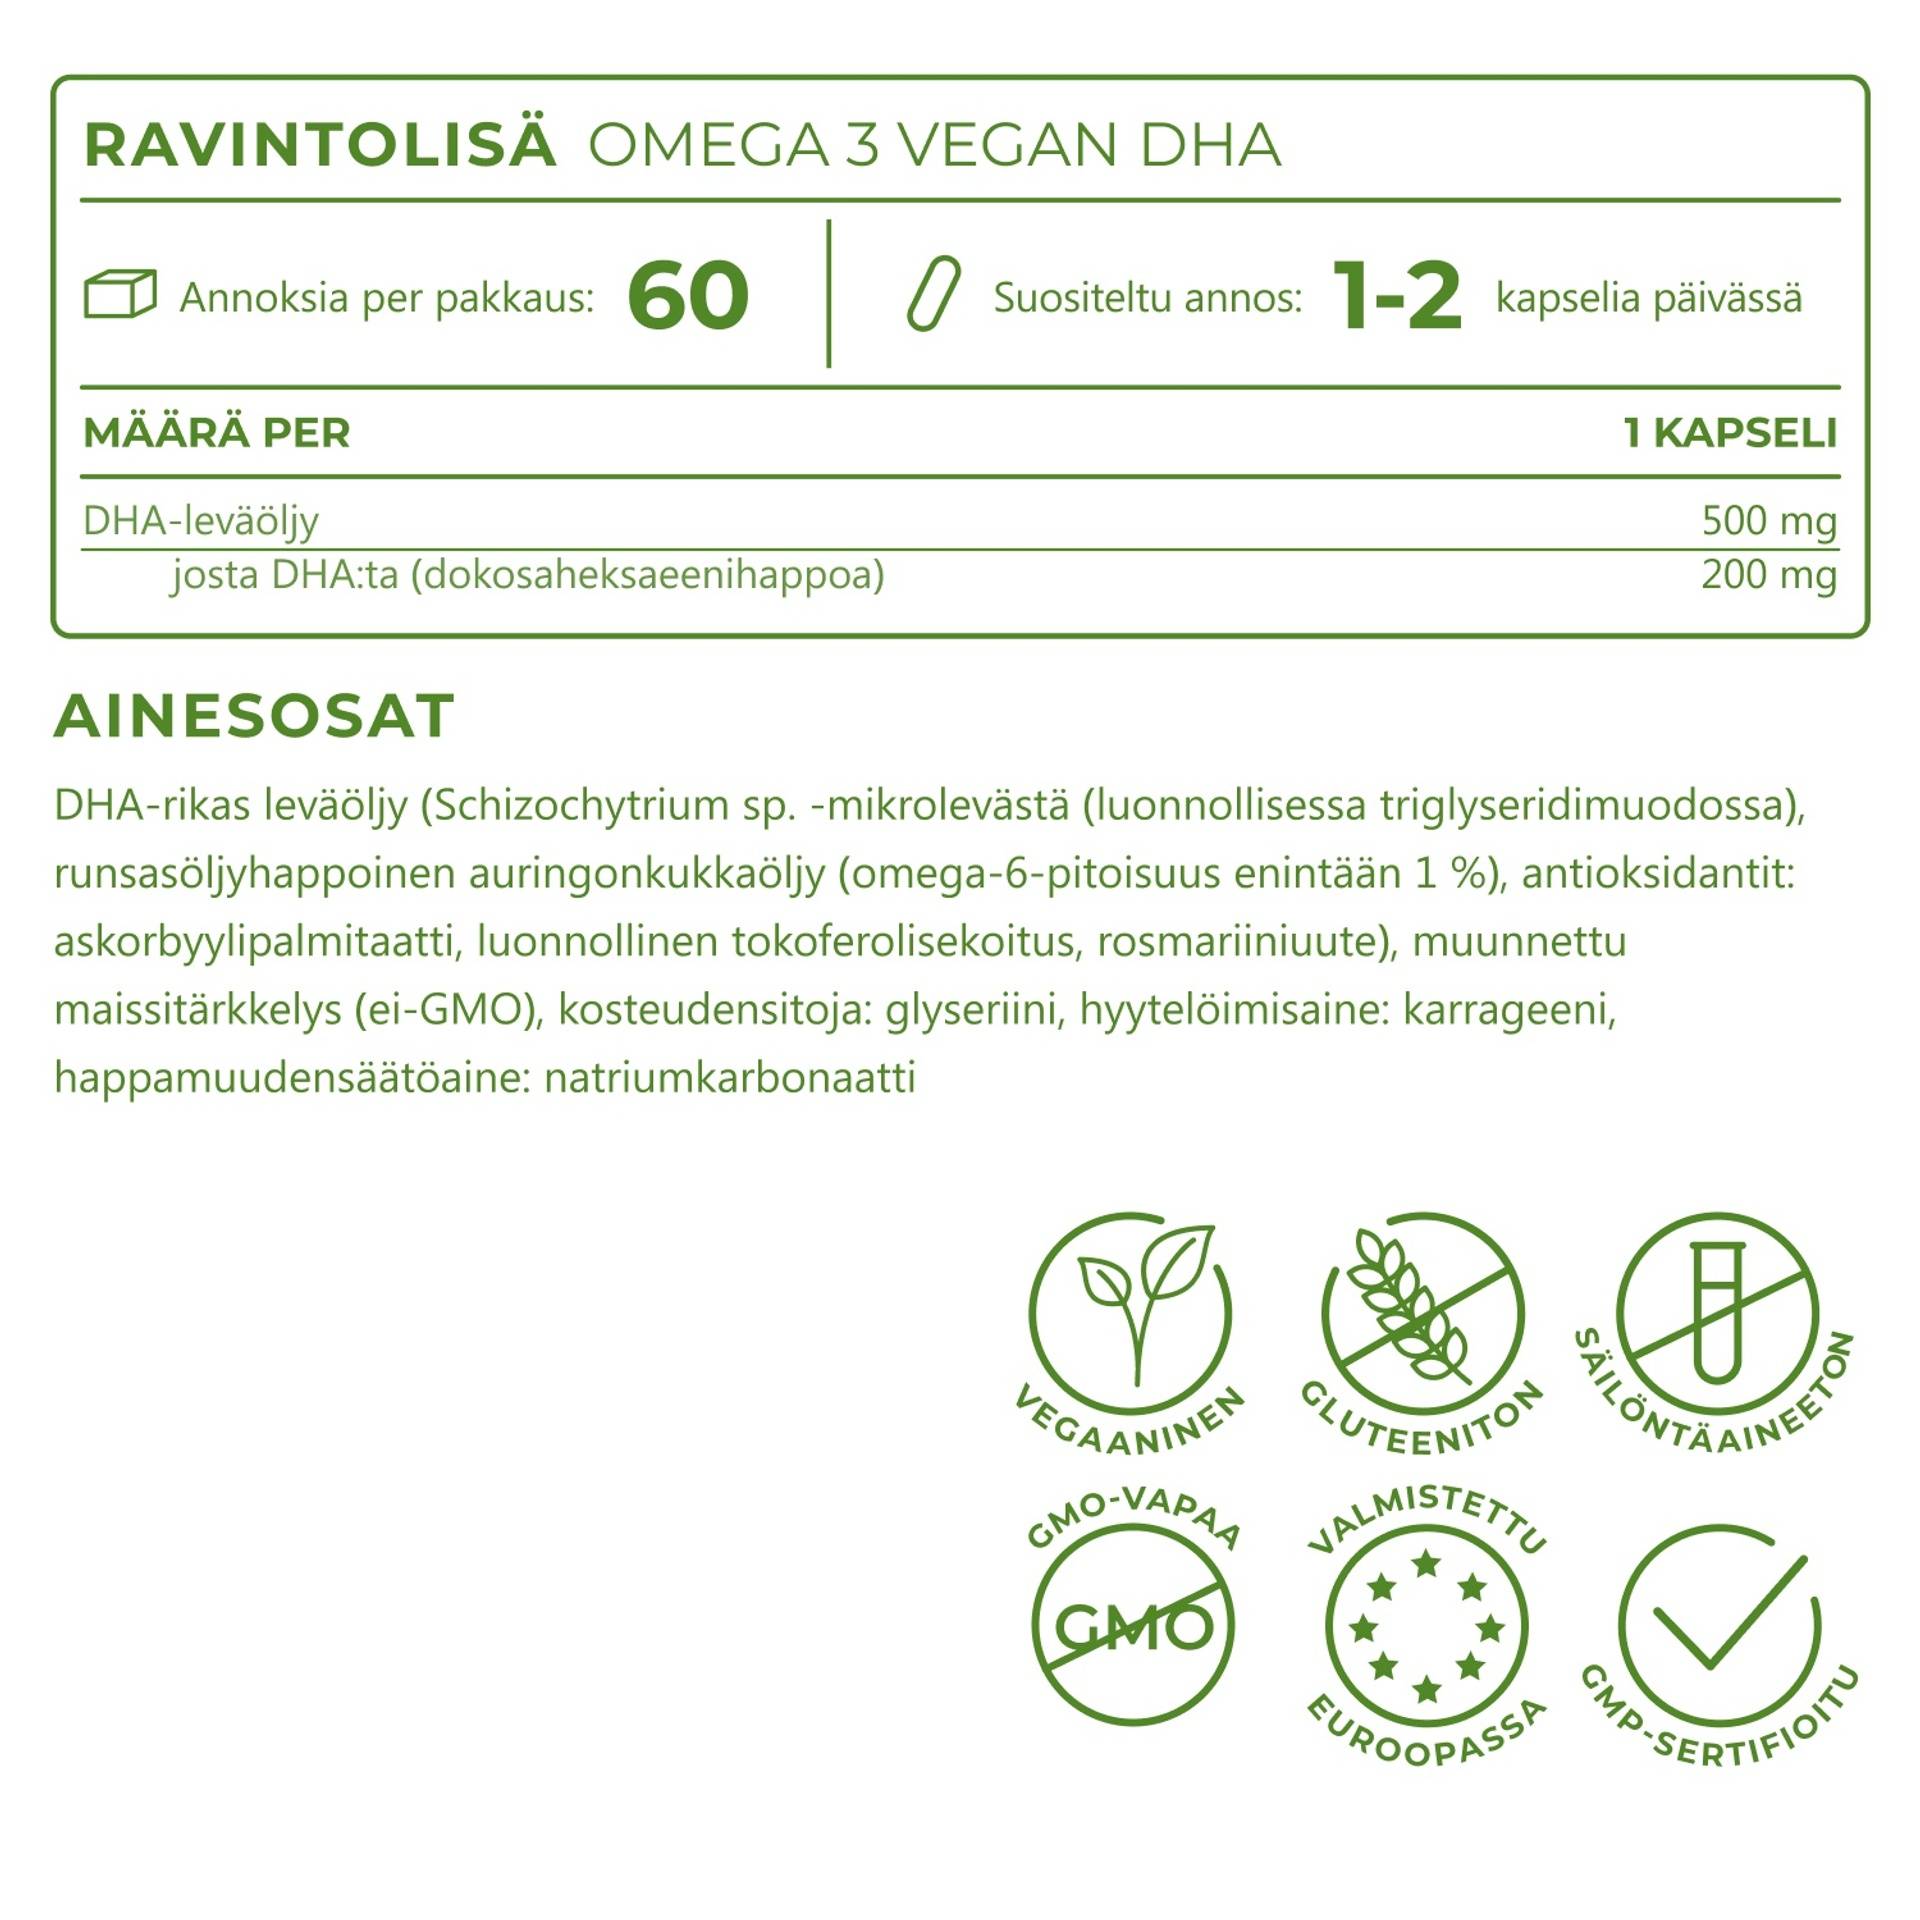 5_FL_Ingredients_Omega-3-vegan-DHA_6850-11.png